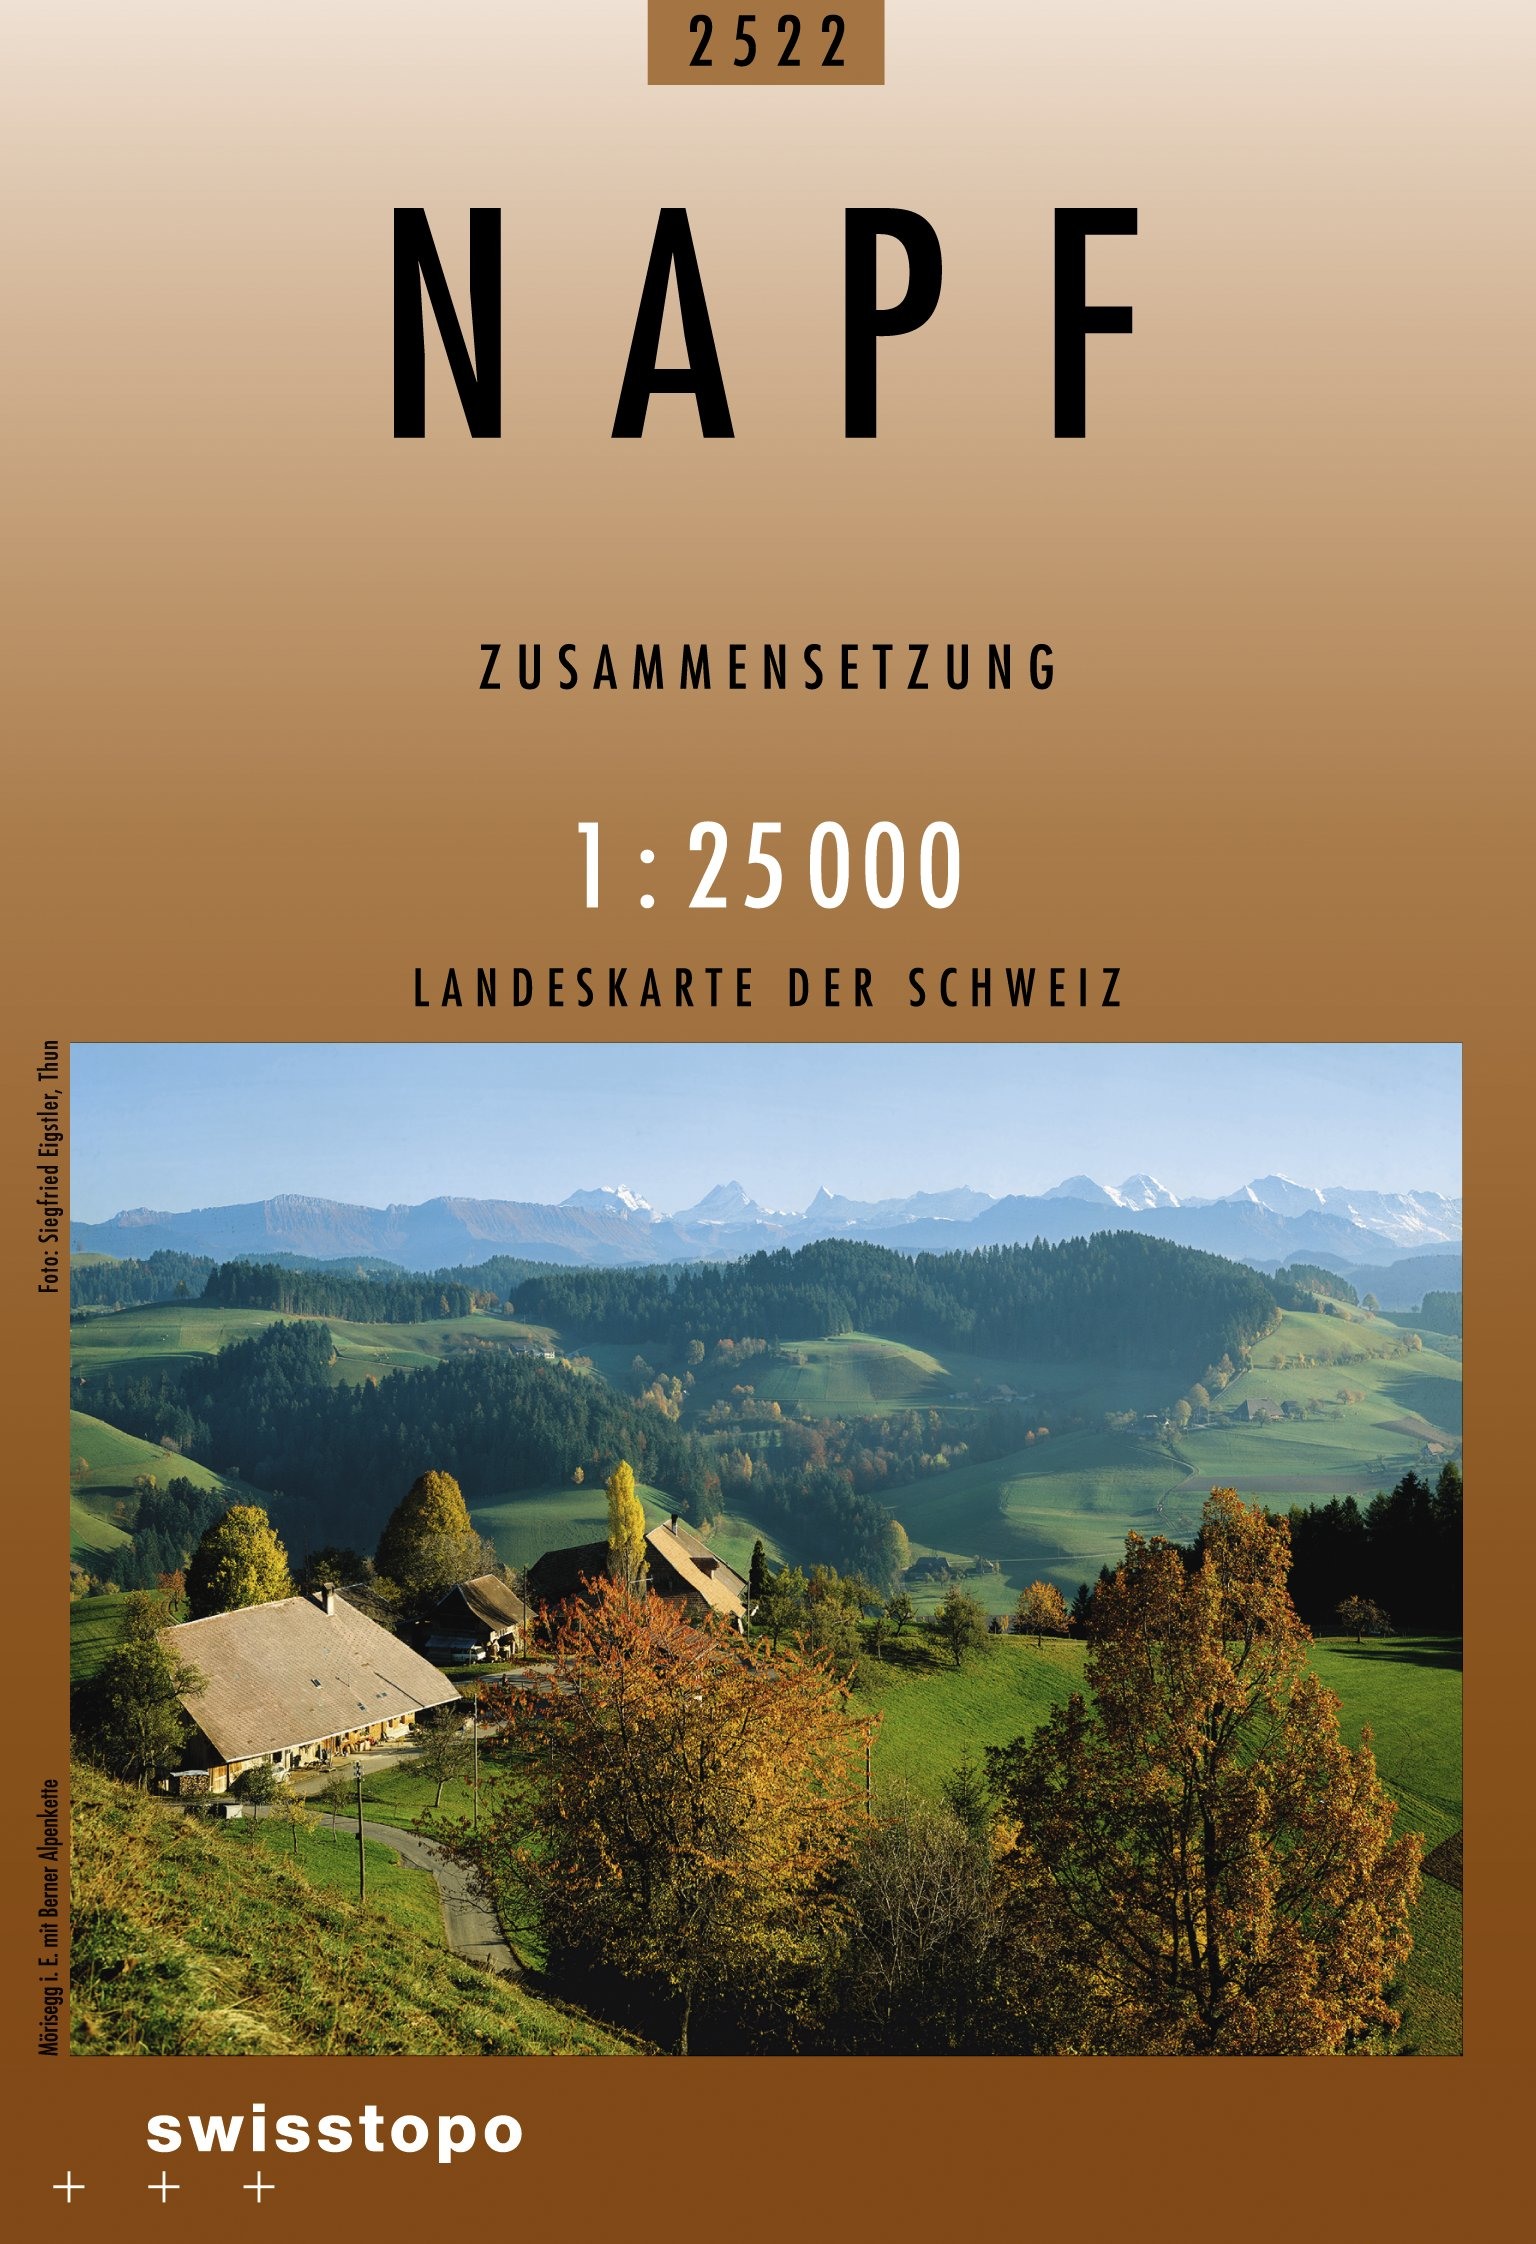 Swisstopo Landeskarte 1 : 25'000 Zusammensetzung Napf<br>